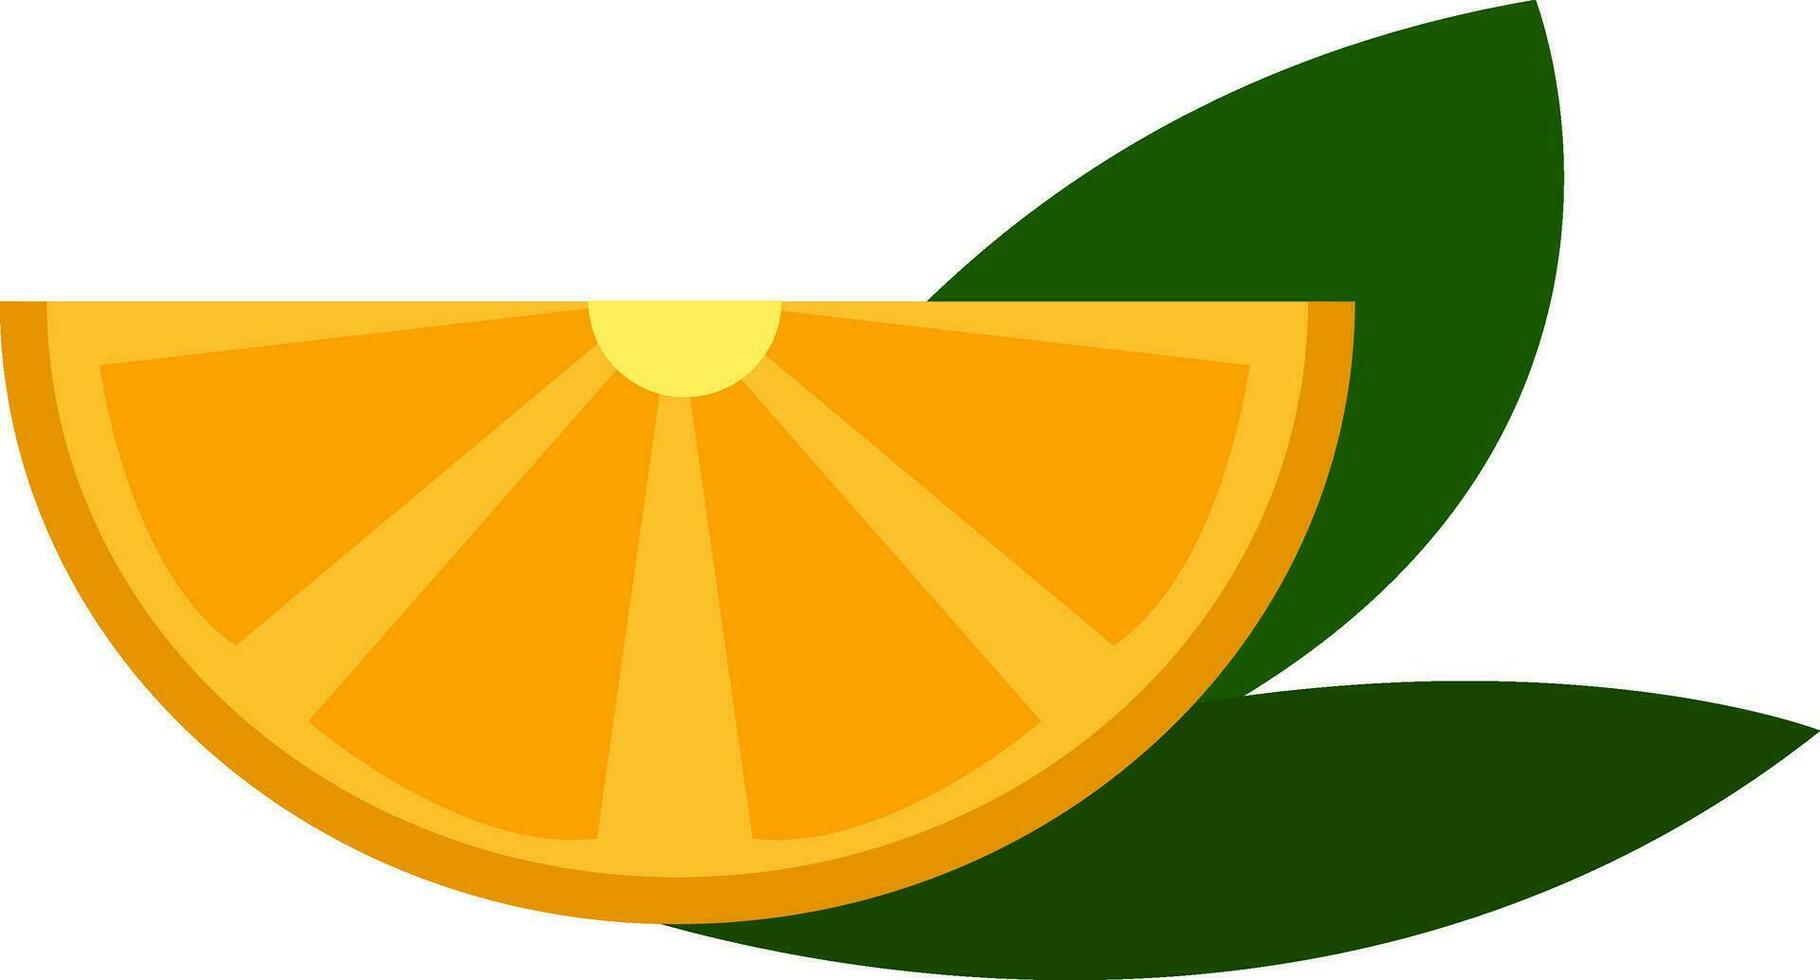 Gelb Zitrone Scheibe mit Grün Blätter Vektor Illustration auf Weiß Hintergrund